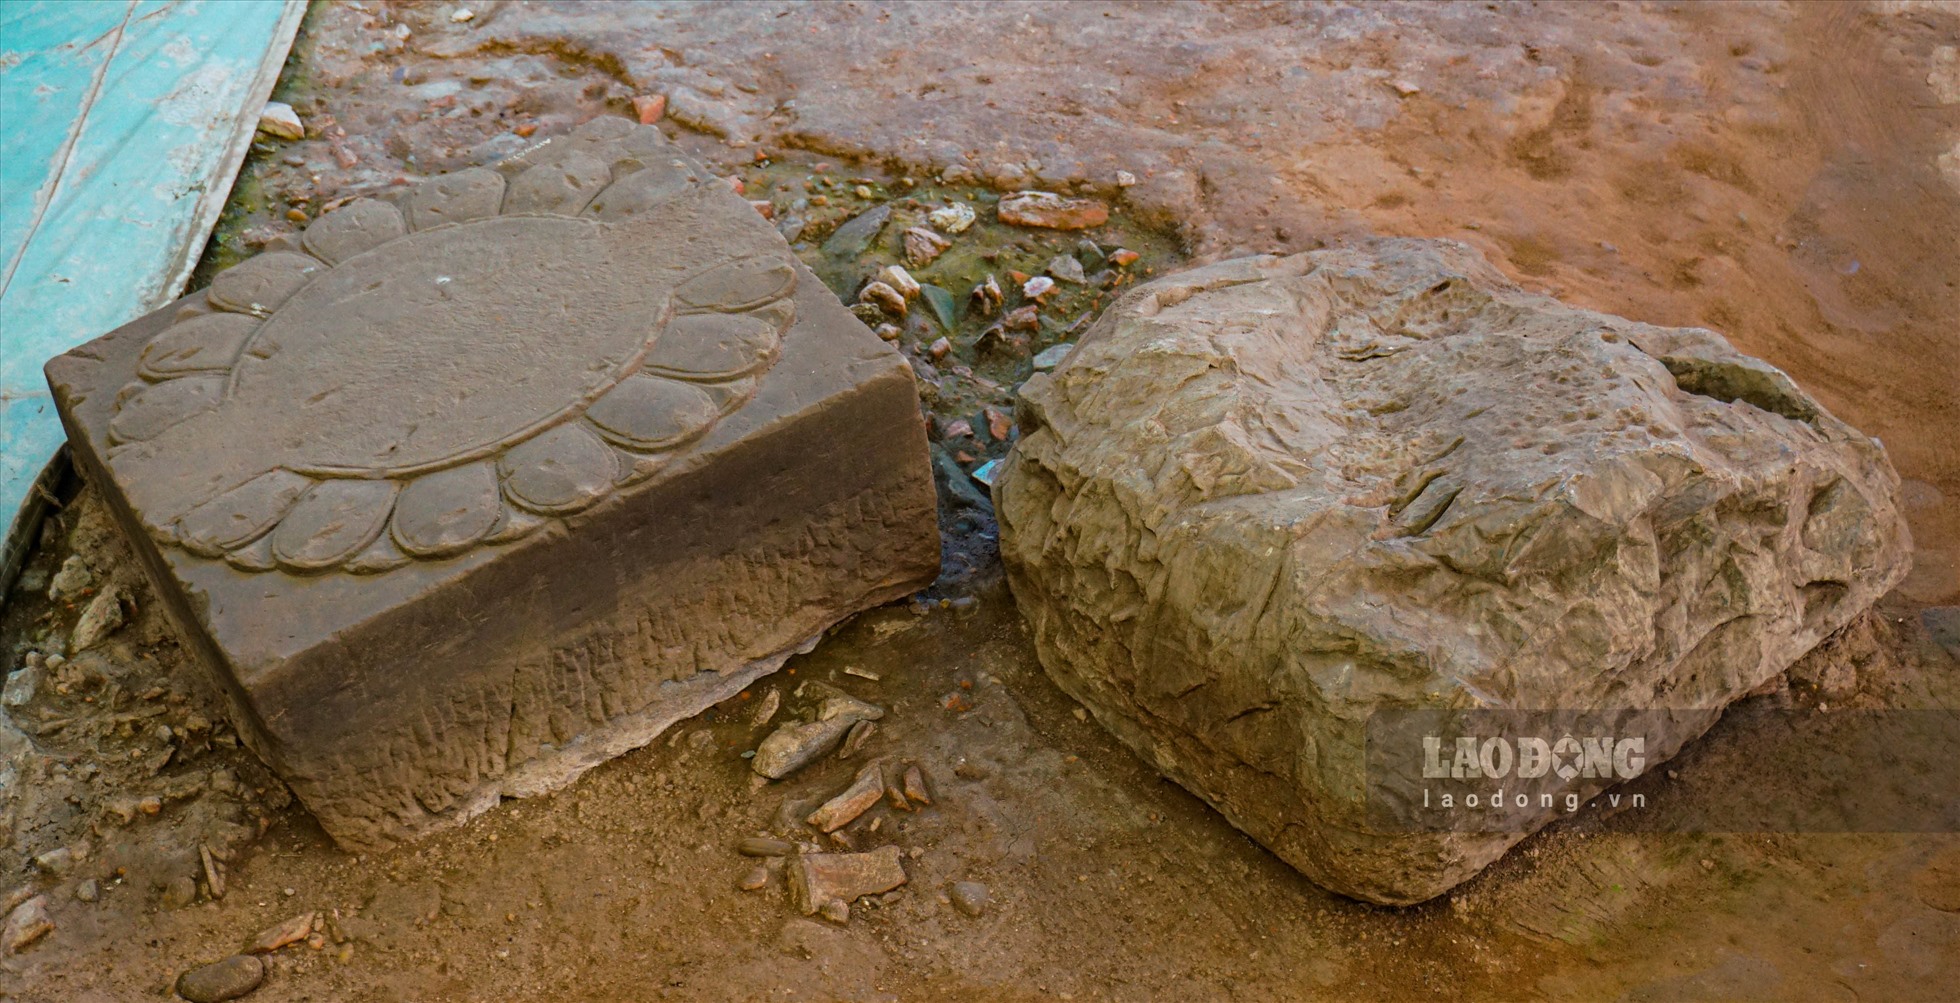 Chân tảng đá kê cột có niên đại hơn 1000 năm được bảo quản khá nguyên vẹn.